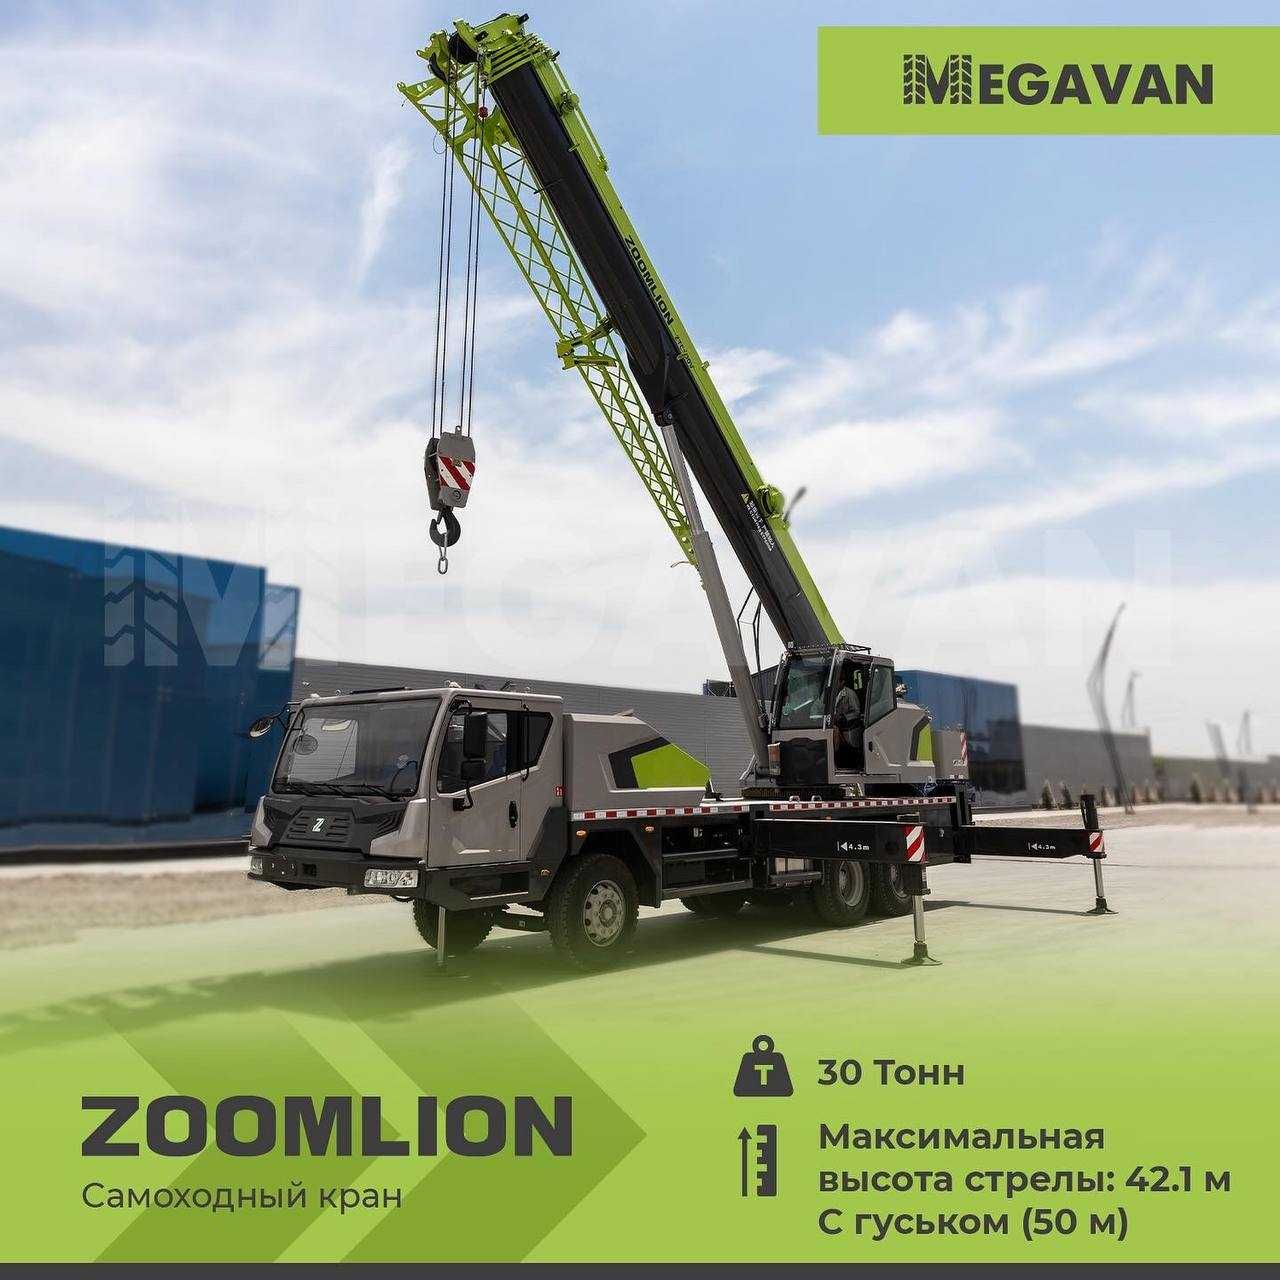 Продается АВТОКРАН 30 тонн 
Модель: Zoomlion ZTC300V